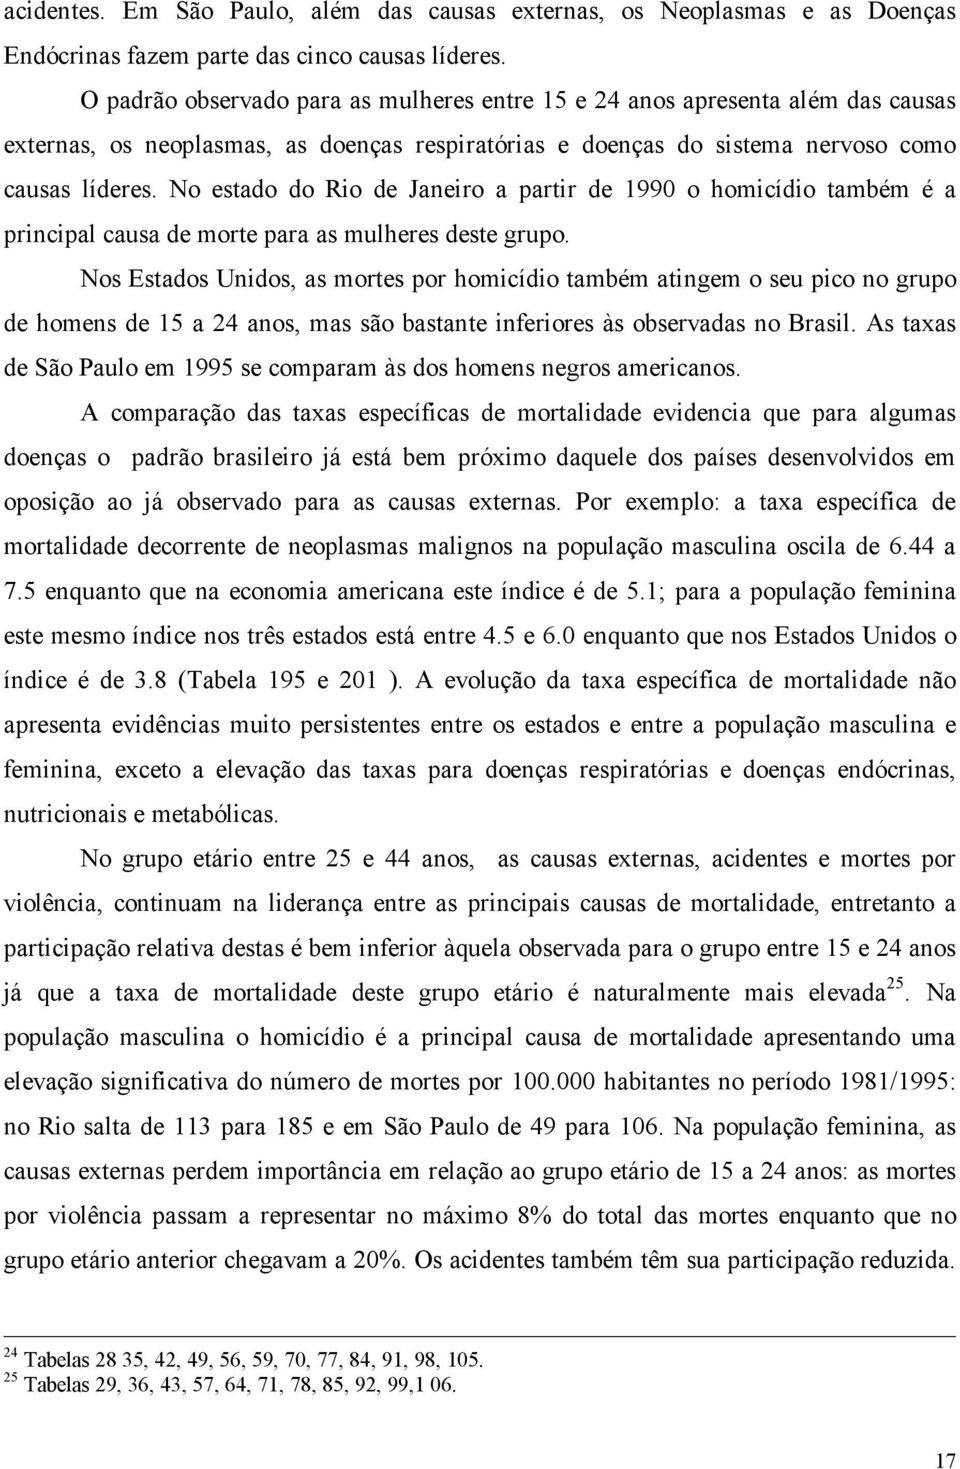 No estado do Rio de Janeiro a partir de 1990 o homicídio também é a principal causa de morte para as mulheres deste grupo.